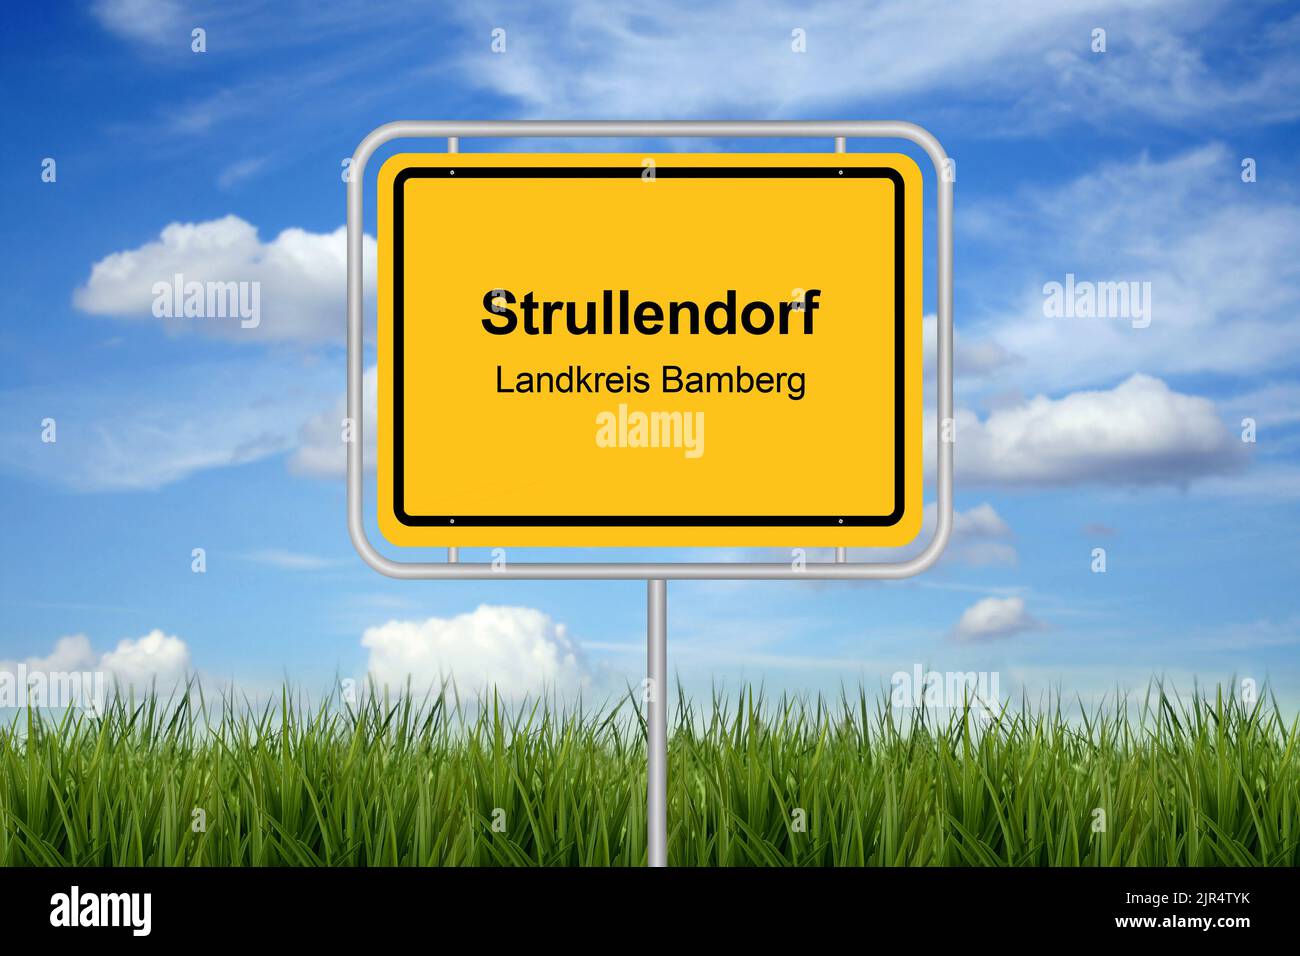 Scritta con l'indicazione della città Strullendorf, Landkreis Bamberg, Germania, Baviera, alta Franconia, Oberfranken, Strullendorf Foto Stock